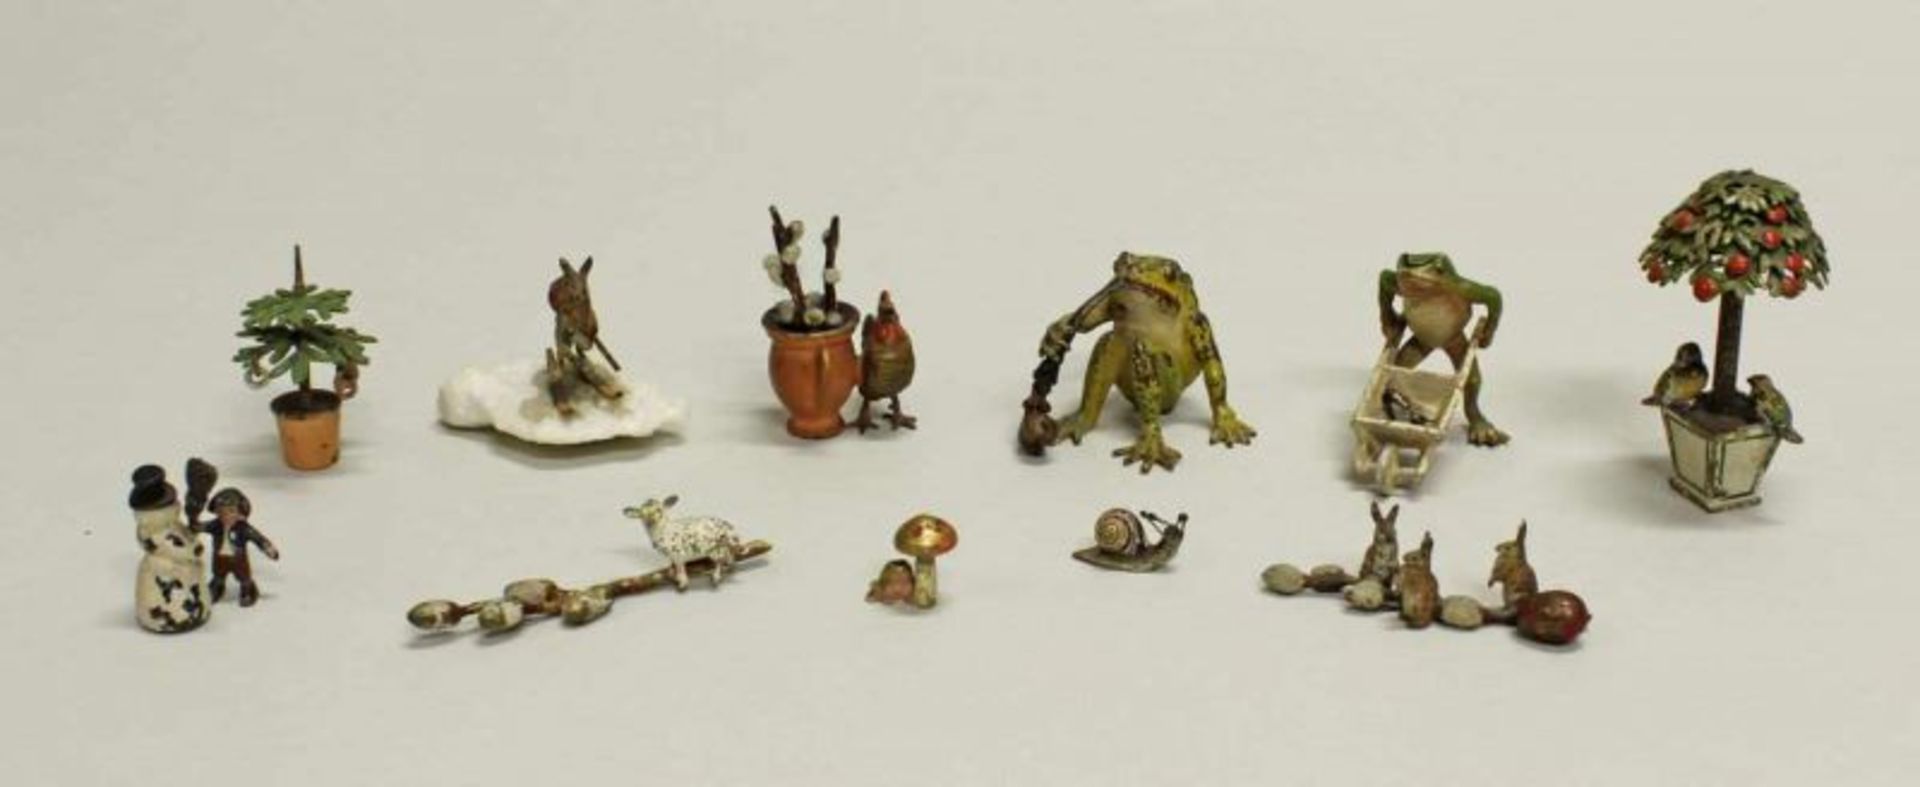 11 Miniaturfiguren, "Frösche, Tiere, Ostern, Winter", Wiener Bronze, polychrom, 0.8-5.2 cm hoch,